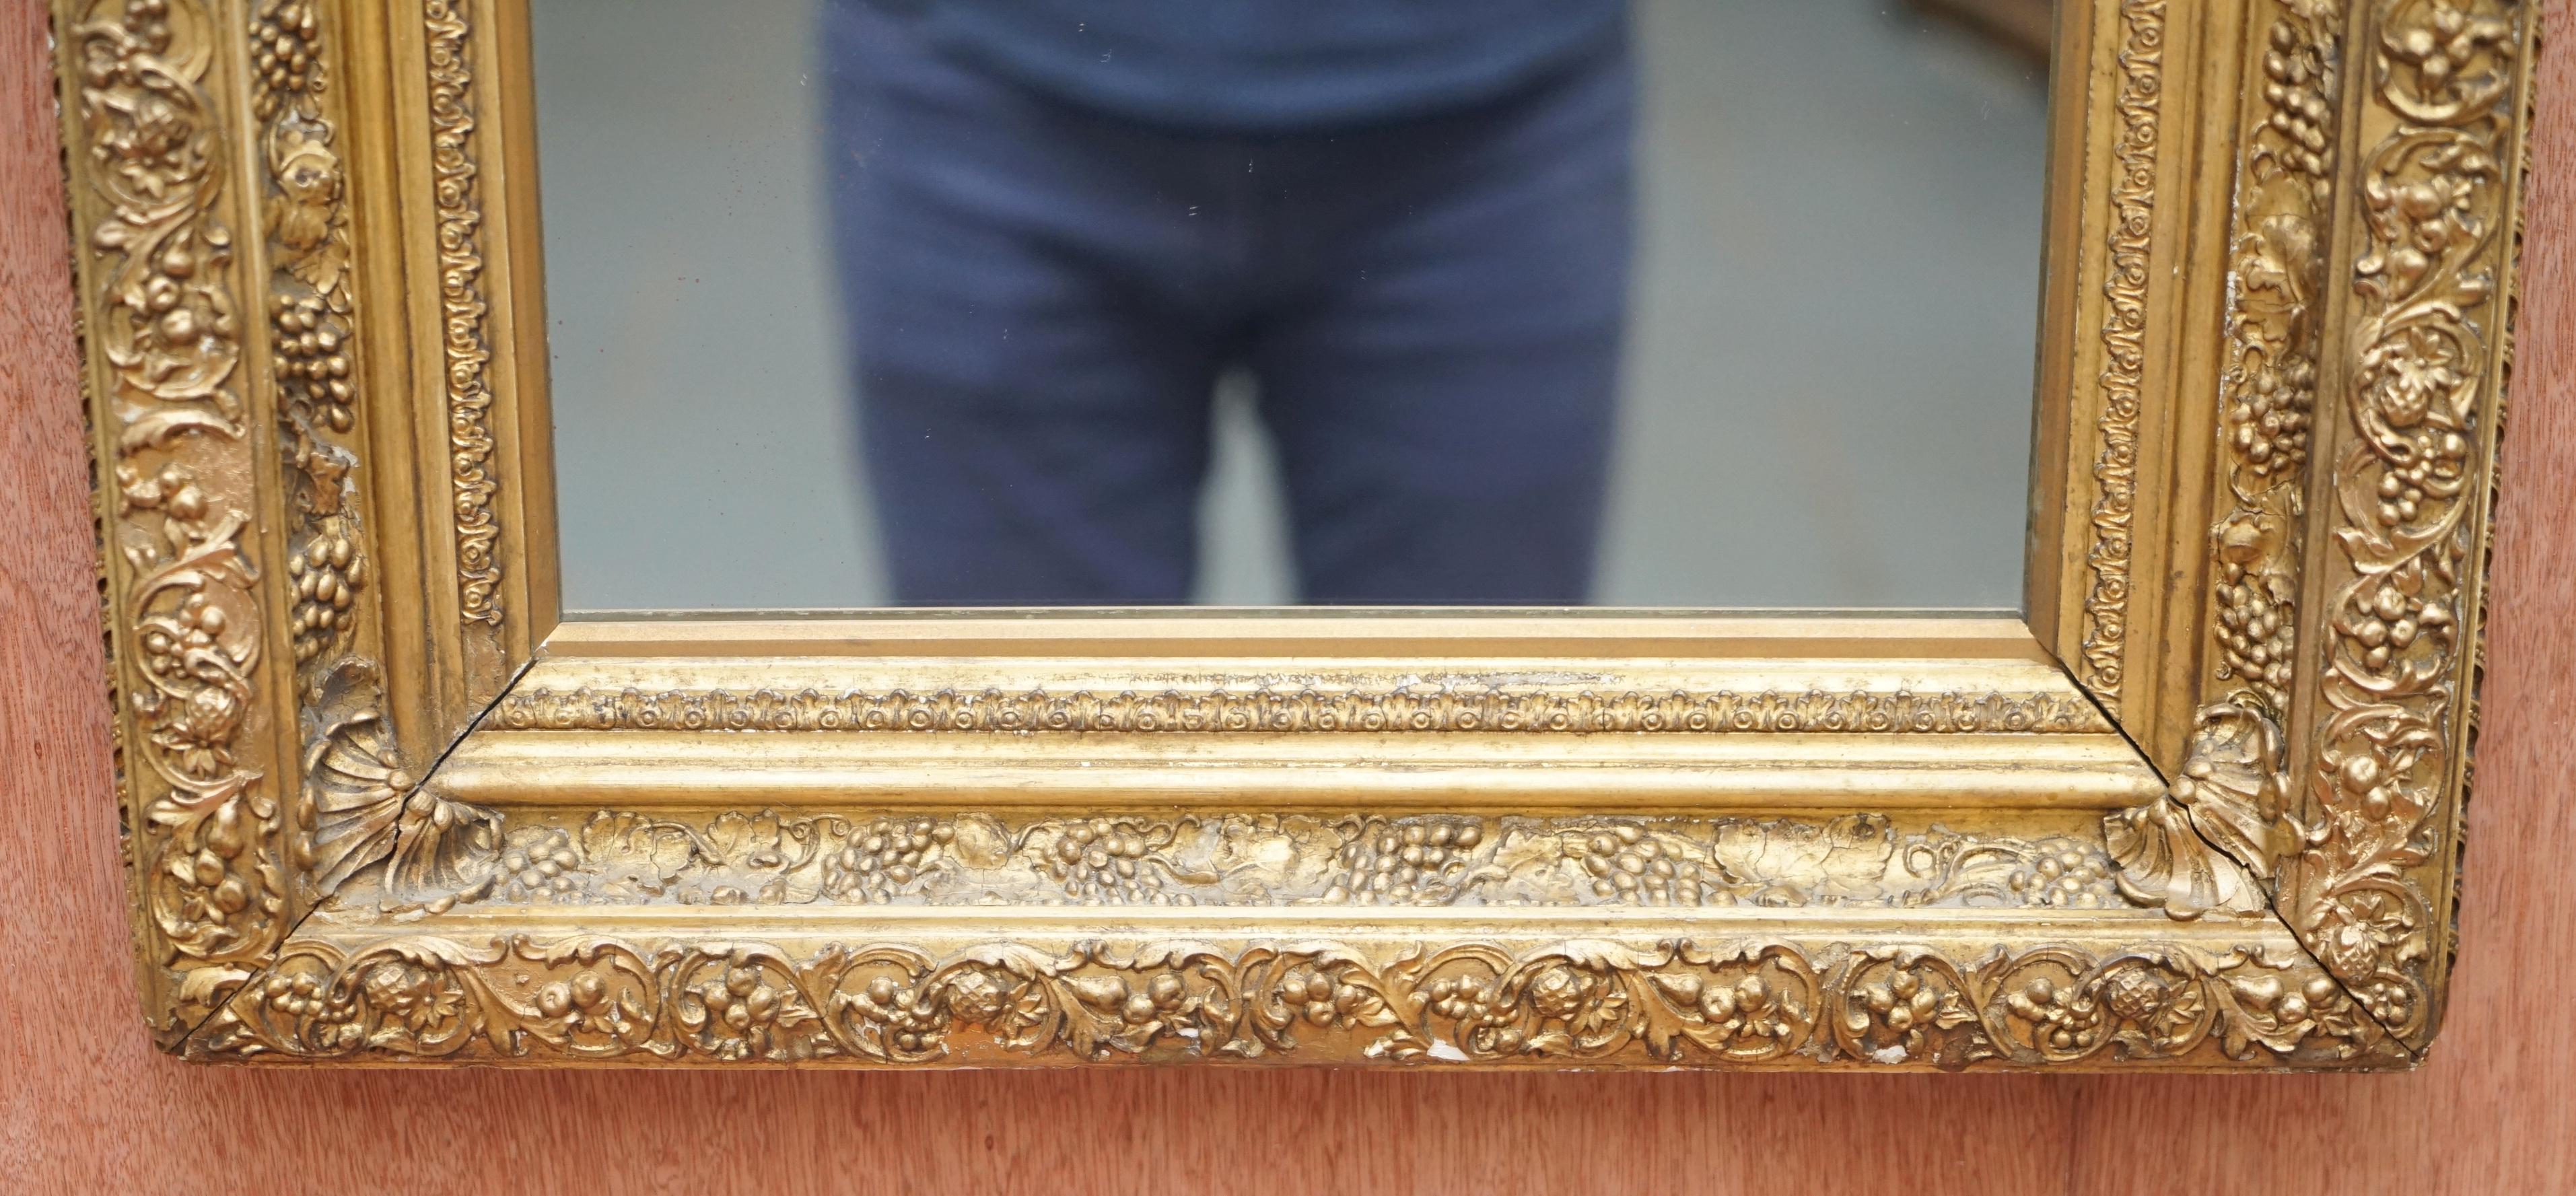 Wir freuen uns, diesen absolut erhabenen englischen viktorianischen, stark geschnitzten Wandspiegel um 1880 zum Verkauf anbieten zu können

Dieser Spiegel ist eine Meisterleistung der Schnitzerei. Der Rahmen hat drei Ebenen, die wiederum je nach